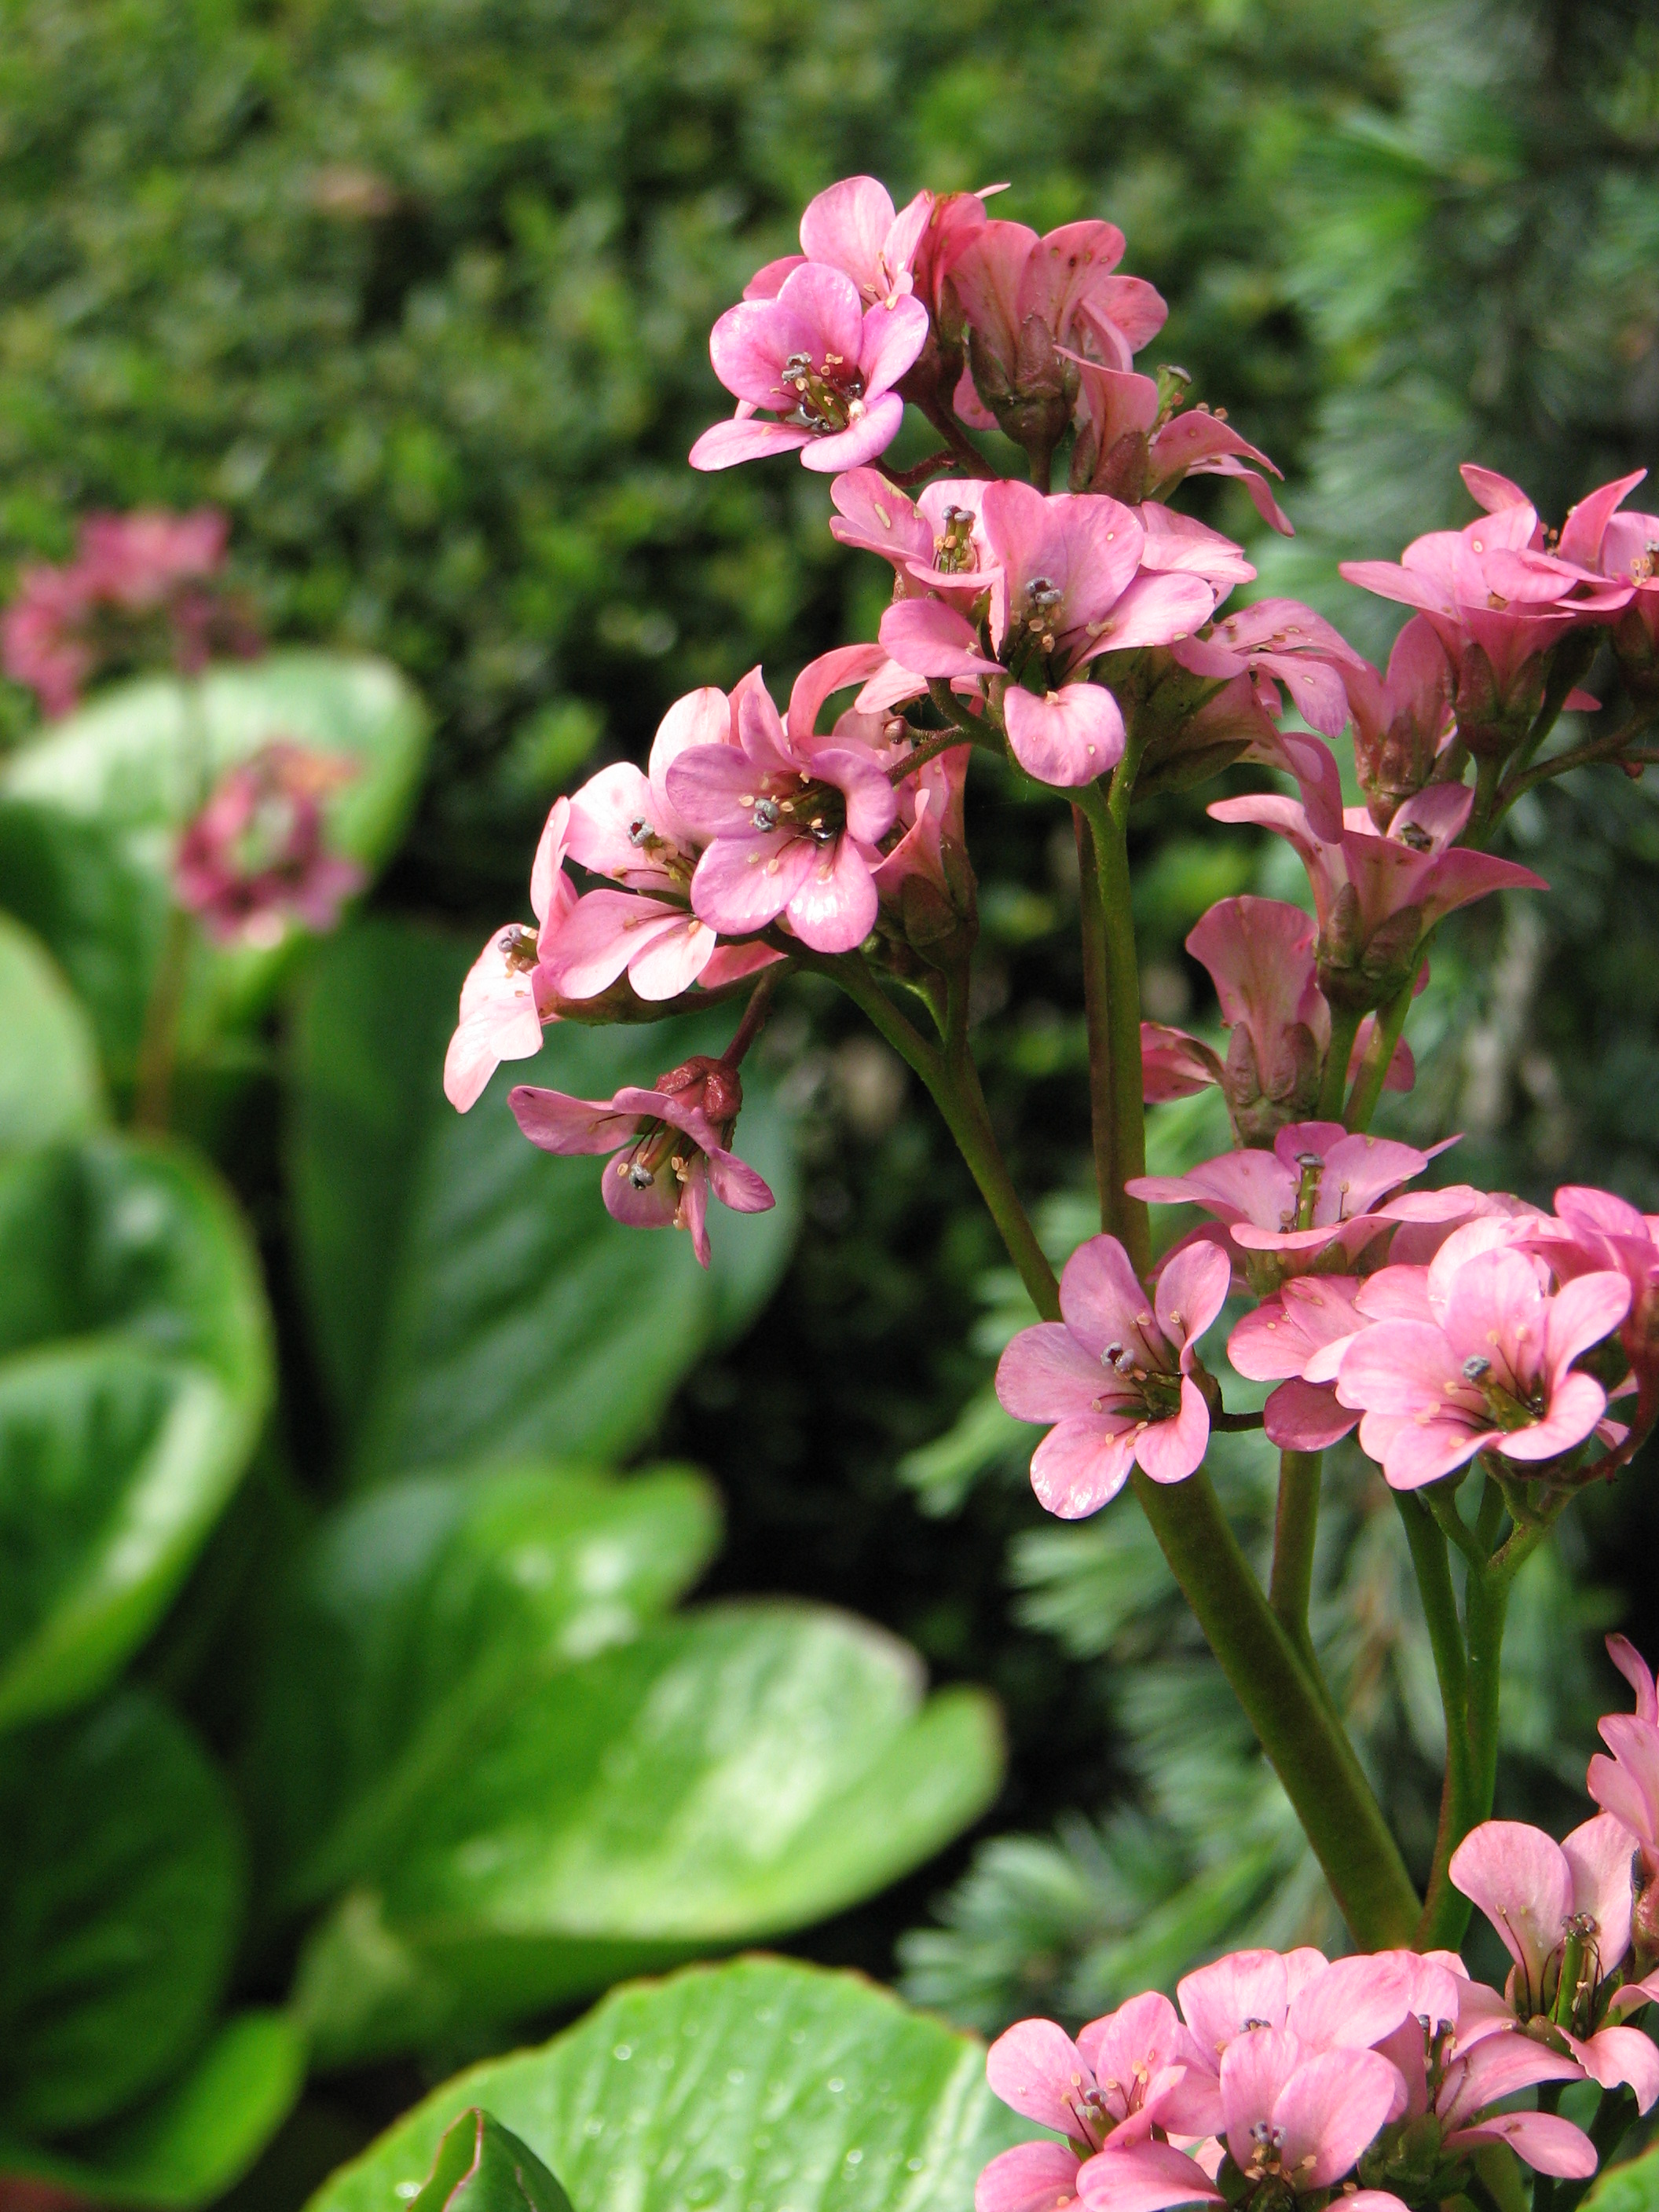 File:Unidentified pink cluster flowers in garden.jpg - Wikimedia Commons